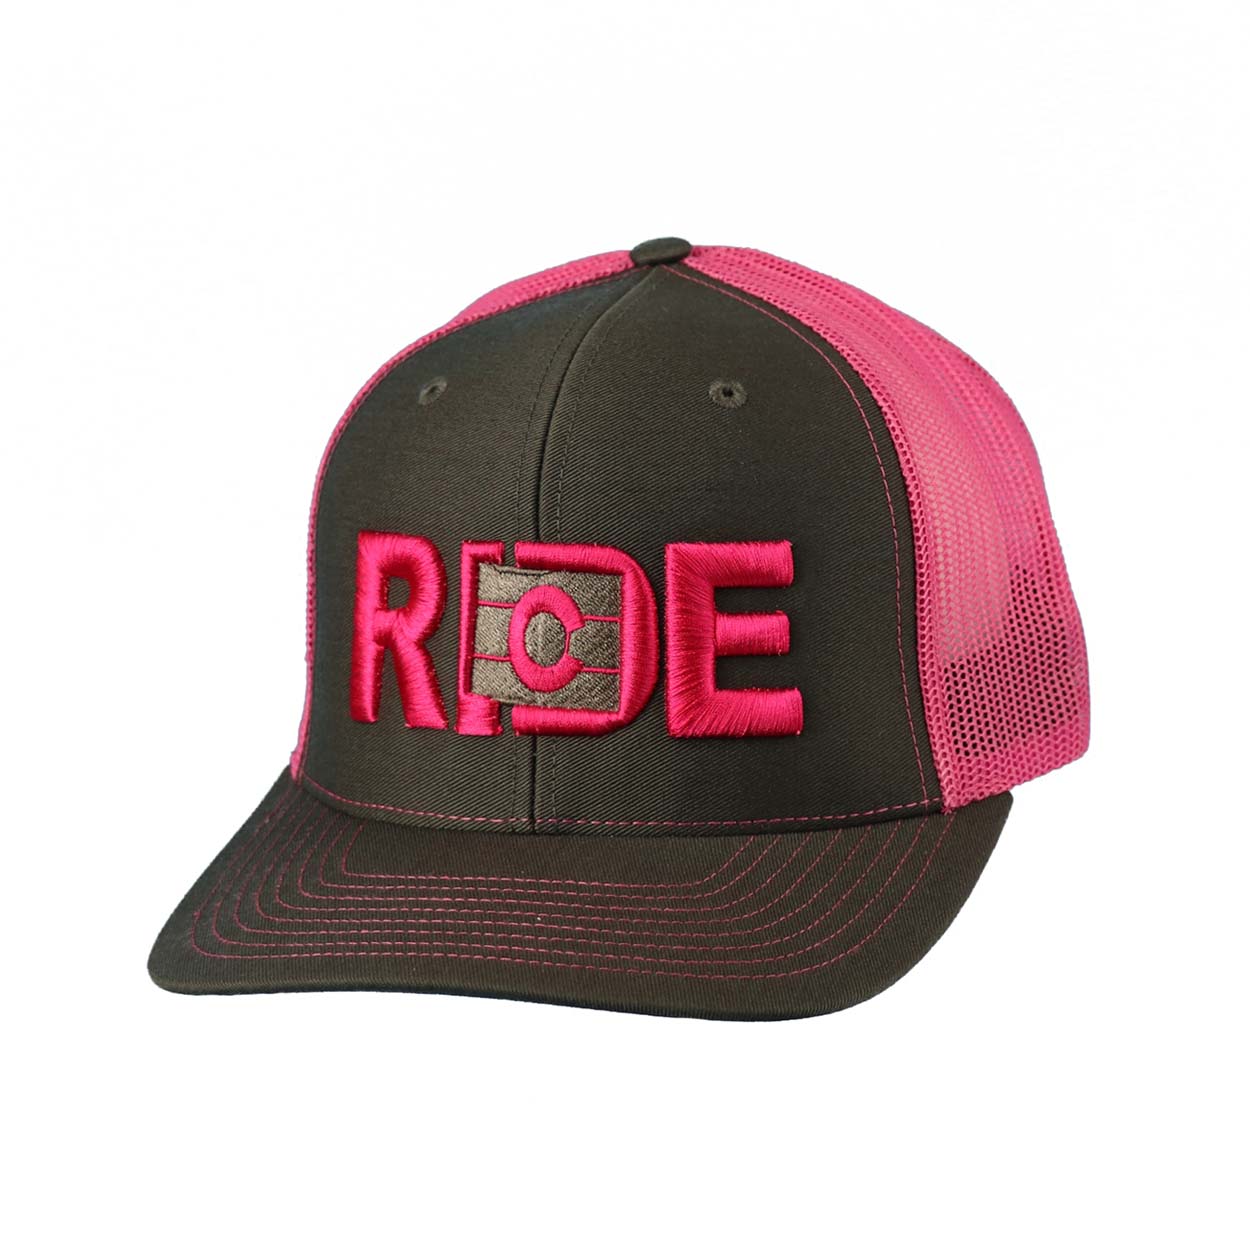 Ride Colorado Classic Pro 3D Puff Embroidered Snapback Trucker Hat Gray/Fuschia